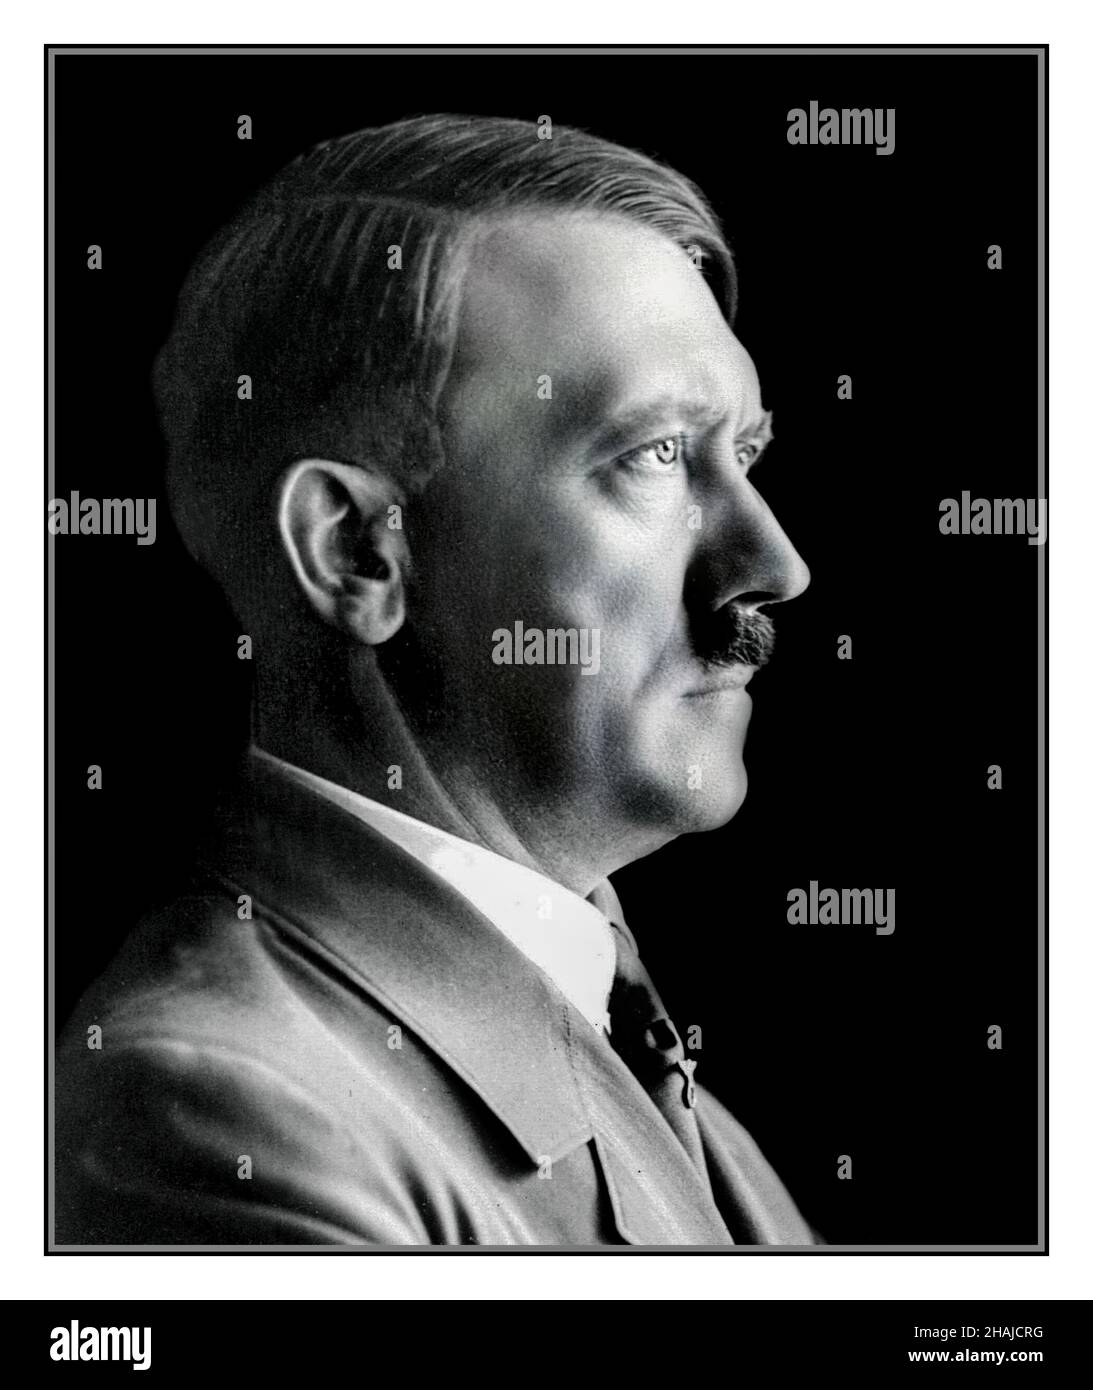 ADOLF HITLER PORTRAIT PROFIL 1930er Jahre s s&W Studio posierte Low Key Kopf und Schulter offizielle Portraitfoto von Adolf Hitler in Uniform, von Heinrich Hoffman Hitlers persönlicher Fotograf verwendet vor allem auf Nazi-Deutschland Briefmarken Stockfoto